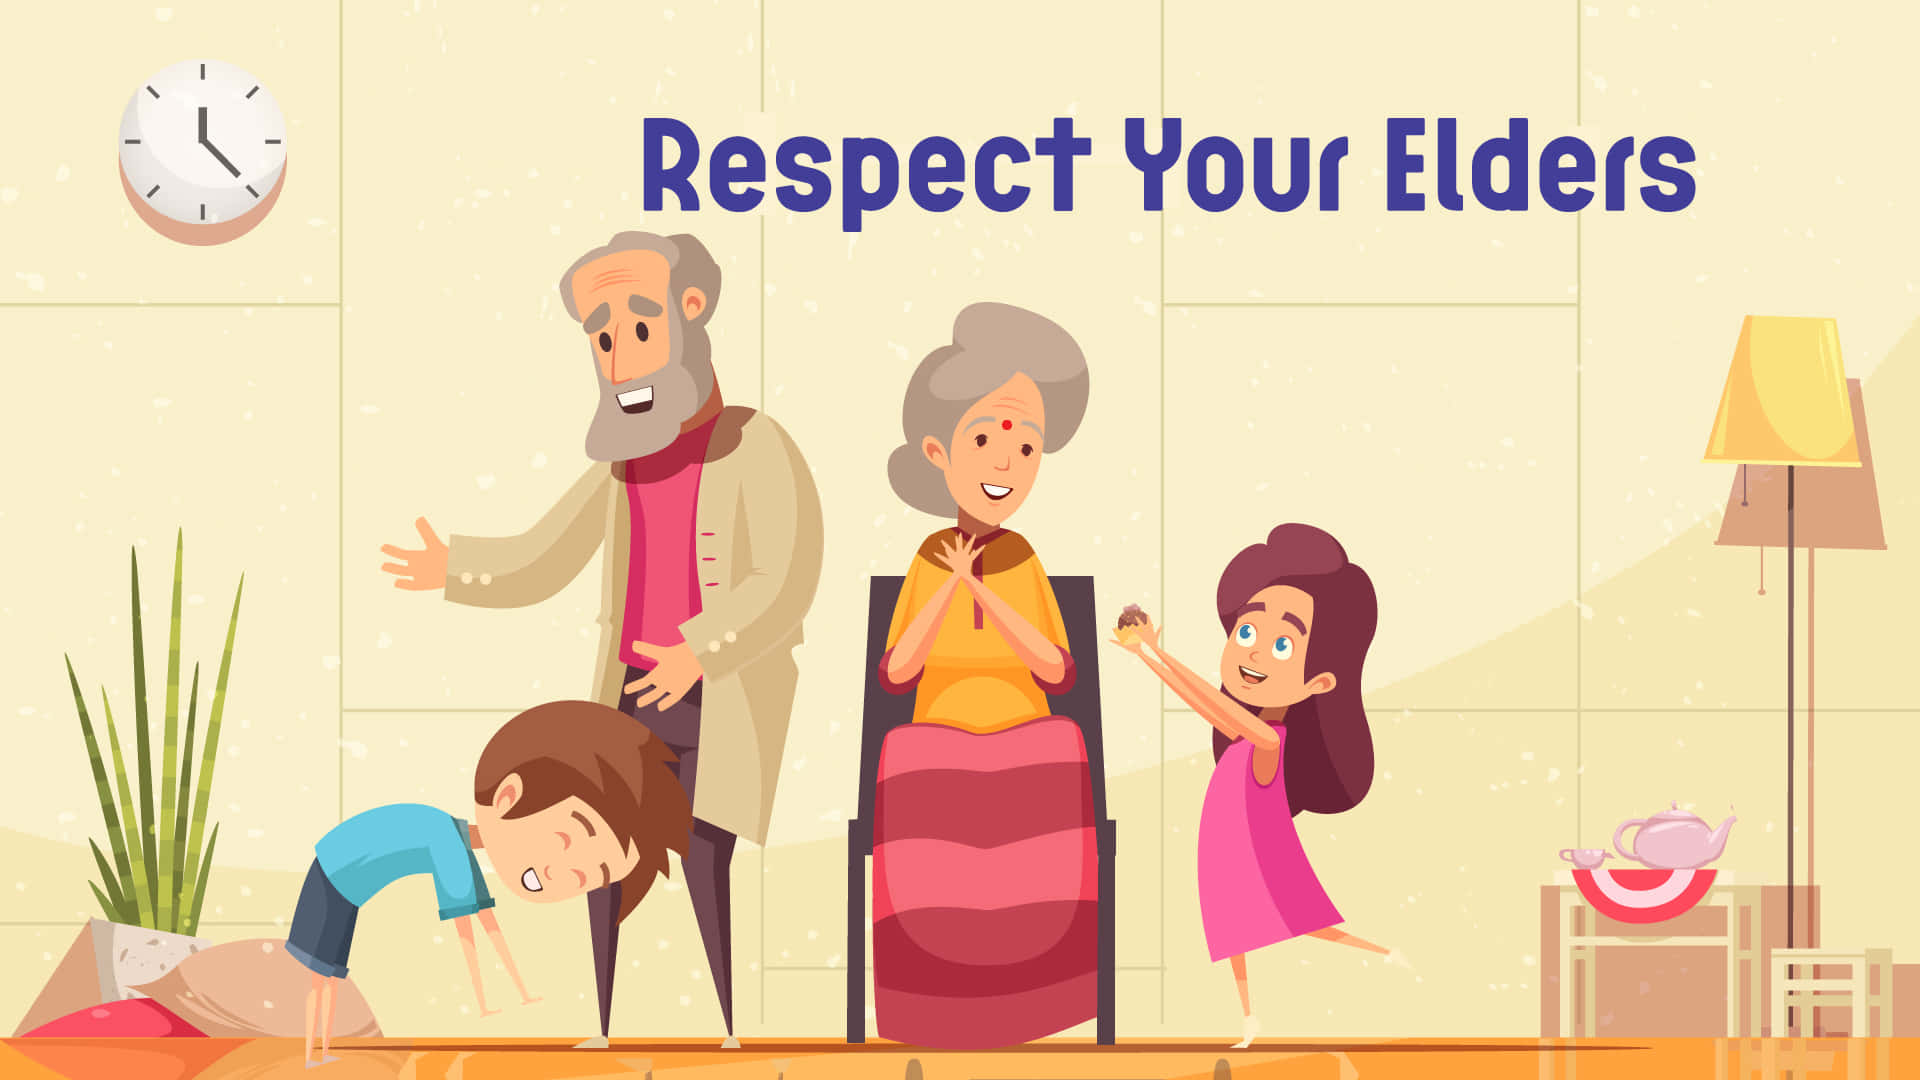 respect your elders